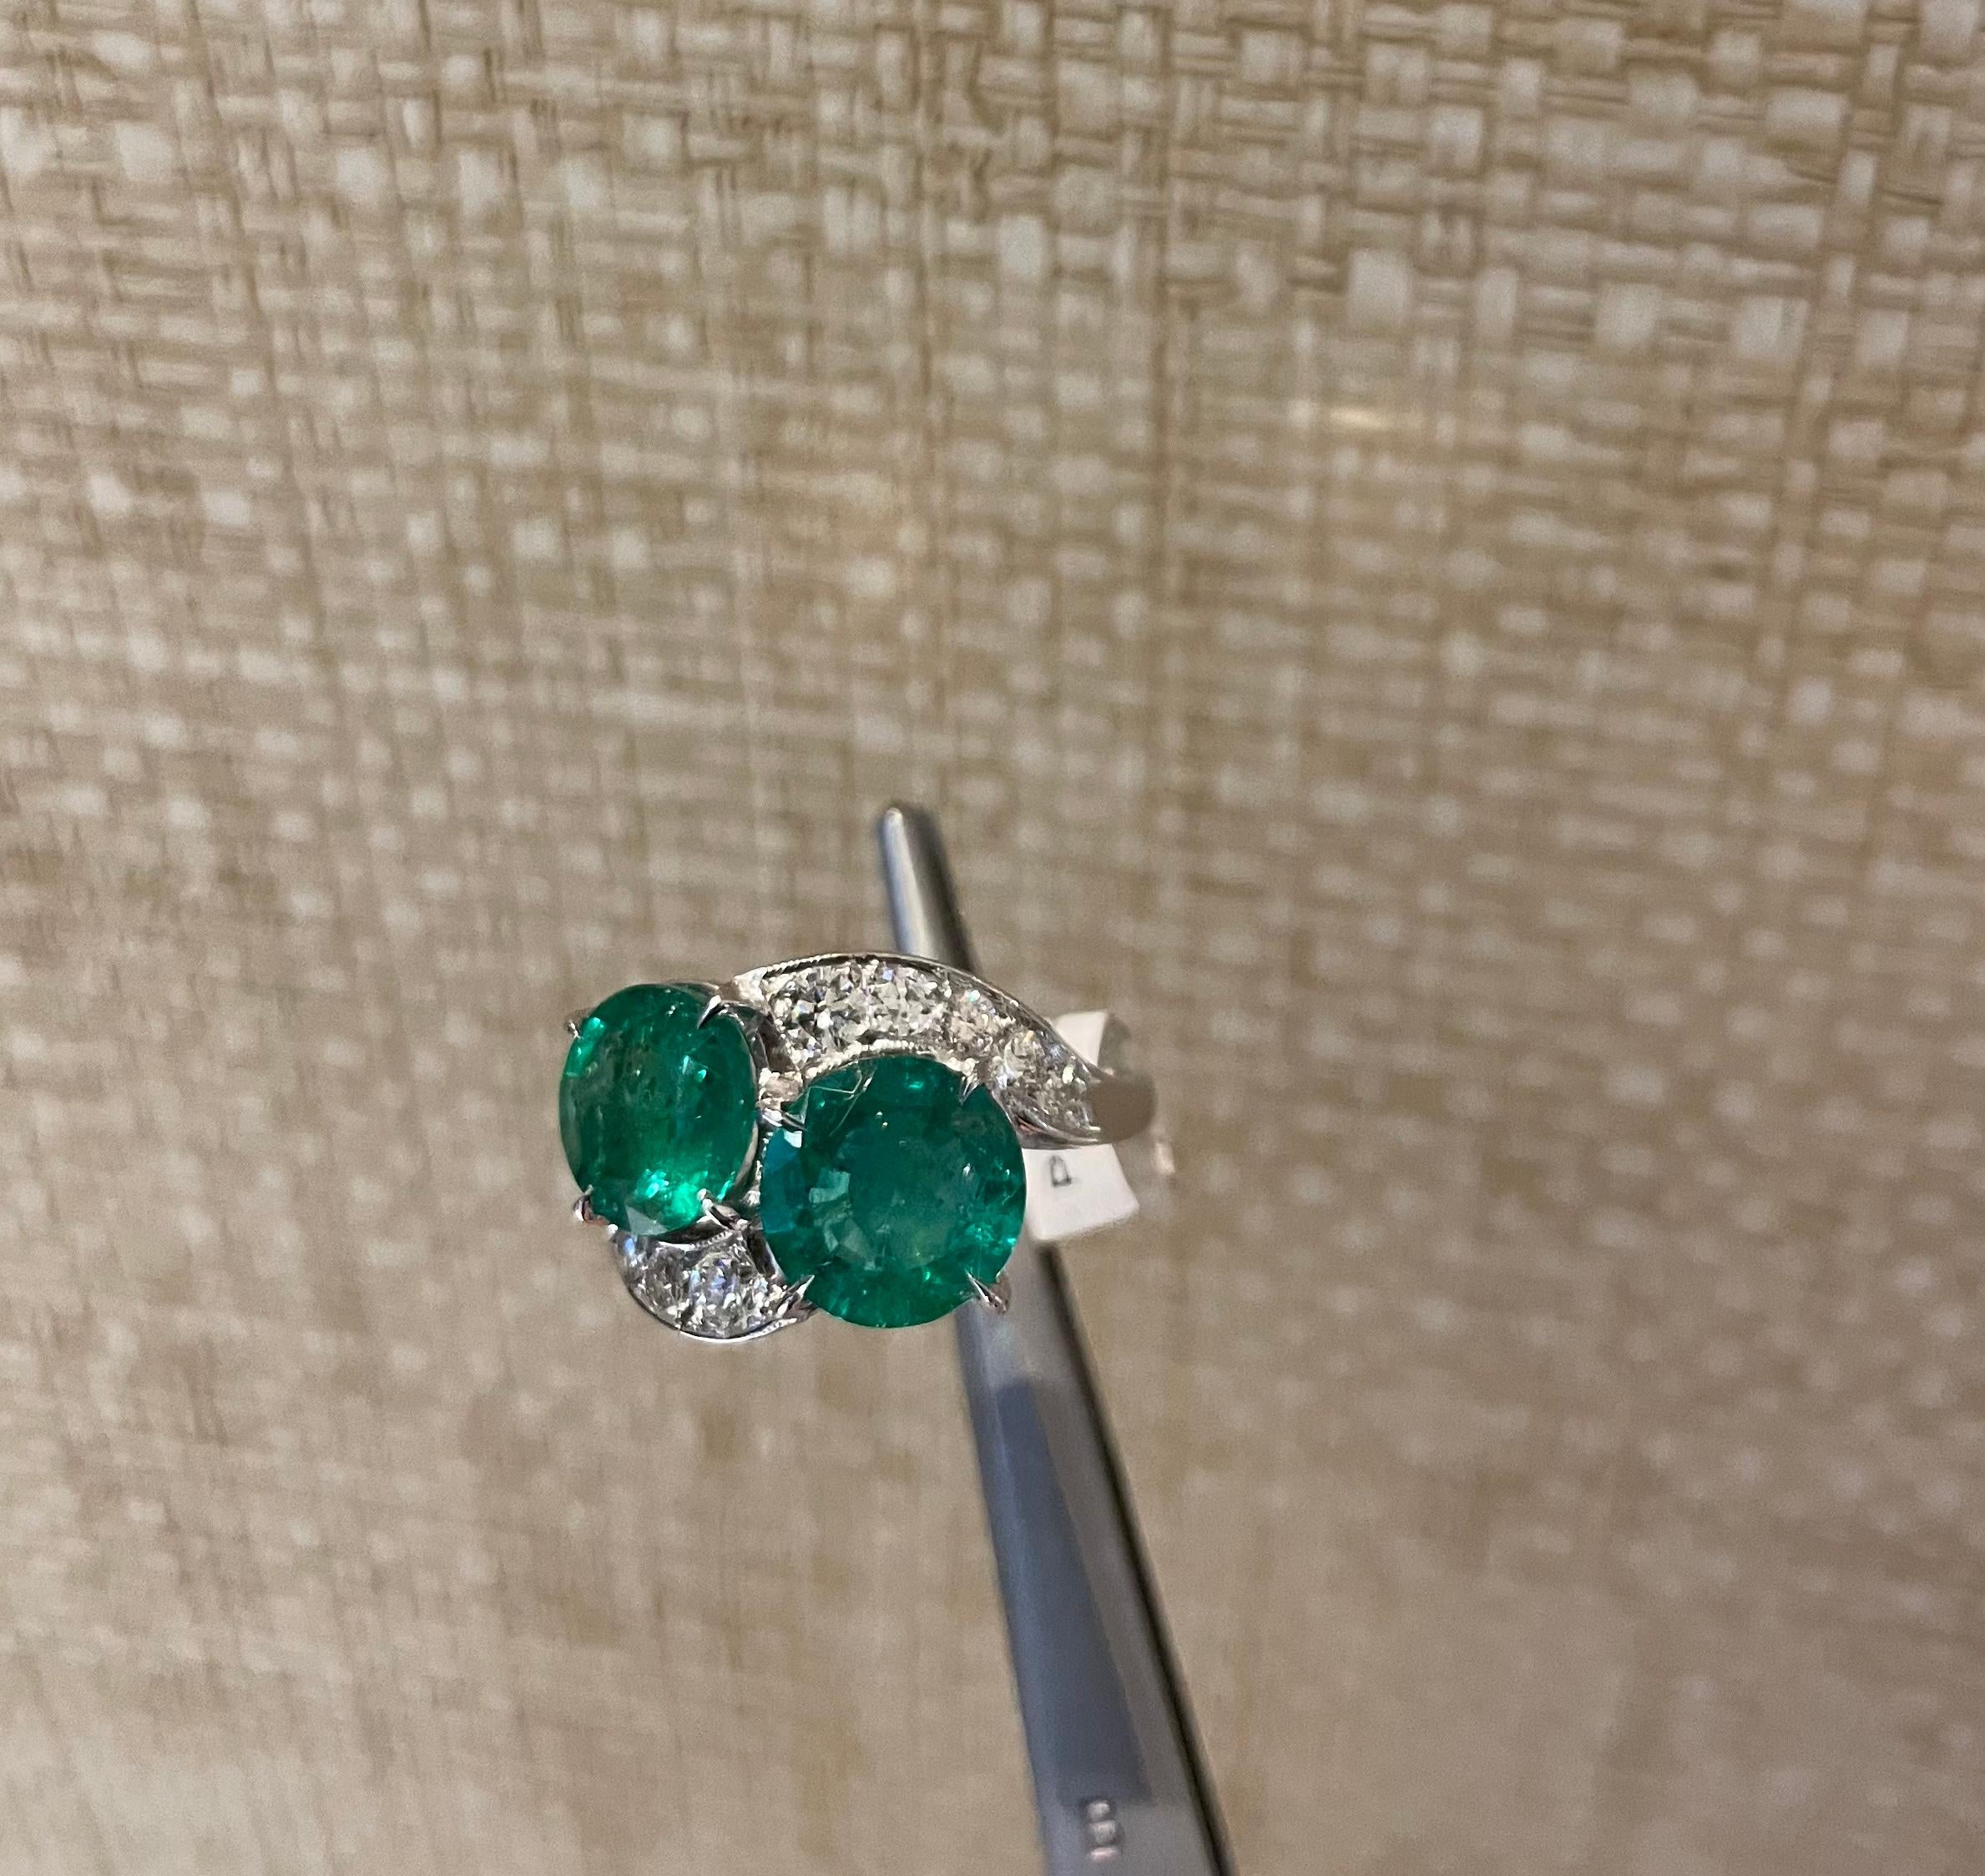 Magnifique bague en émeraude et diamant avec un design vintage unique. Environ 4,5 carats d'émeraudes rondes et 0,75 carats de diamants ronds de taille brillant, sertis en platine.

Taille 6.5